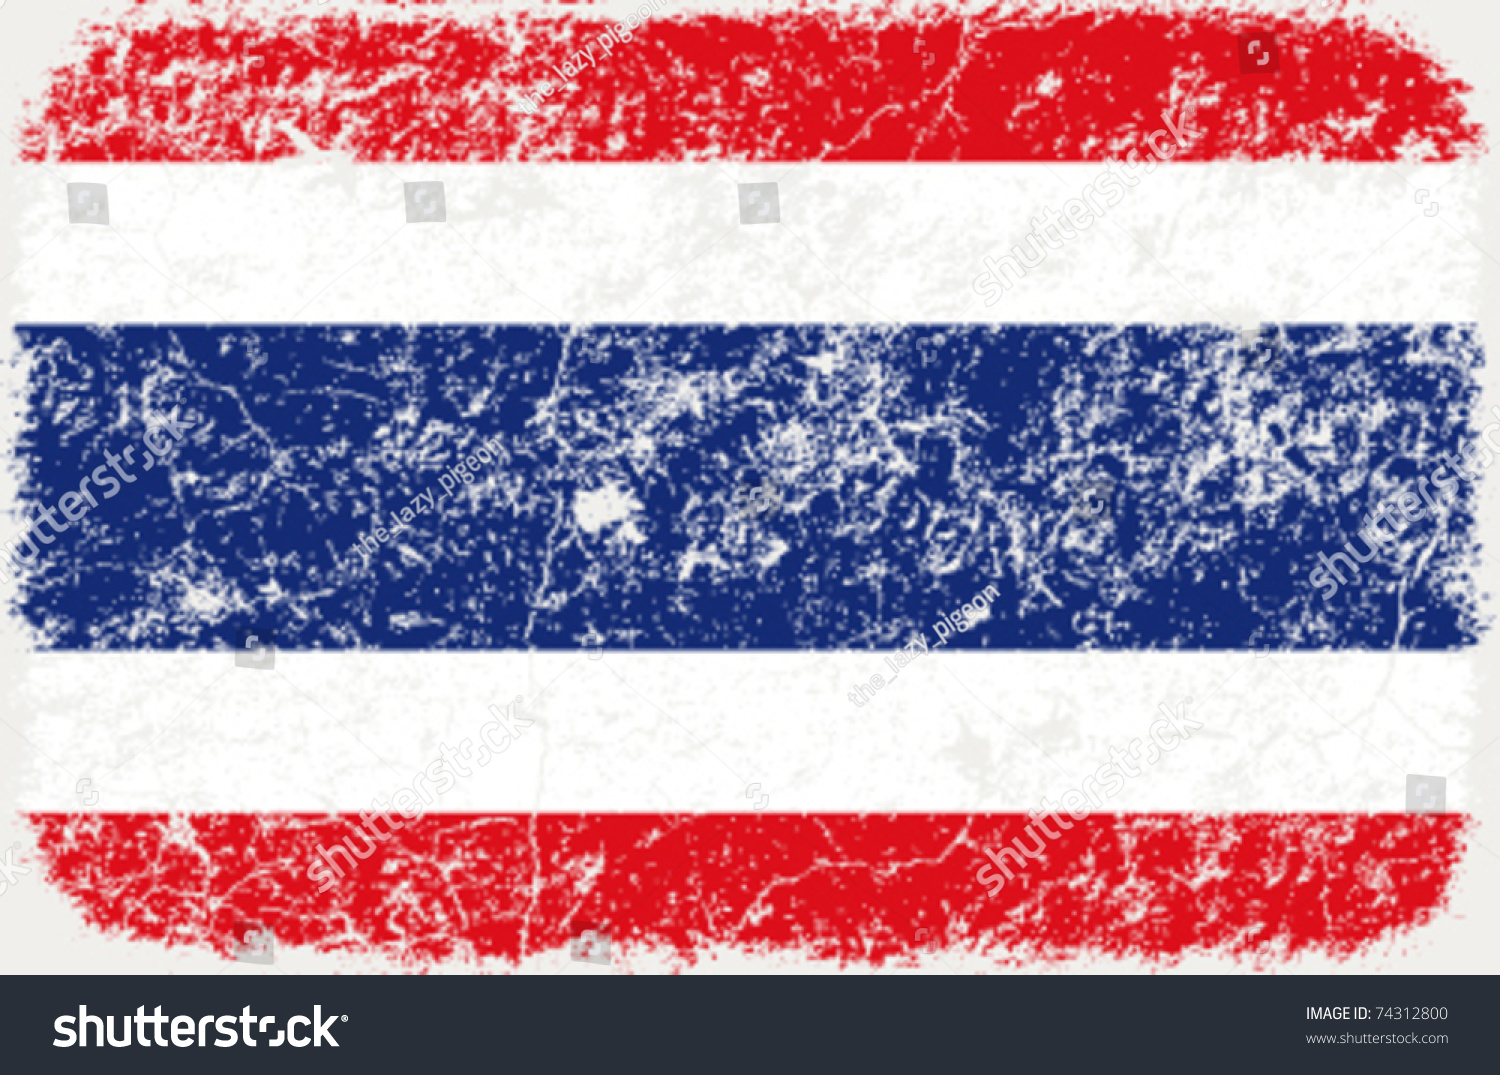 clipart thai flag - photo #21